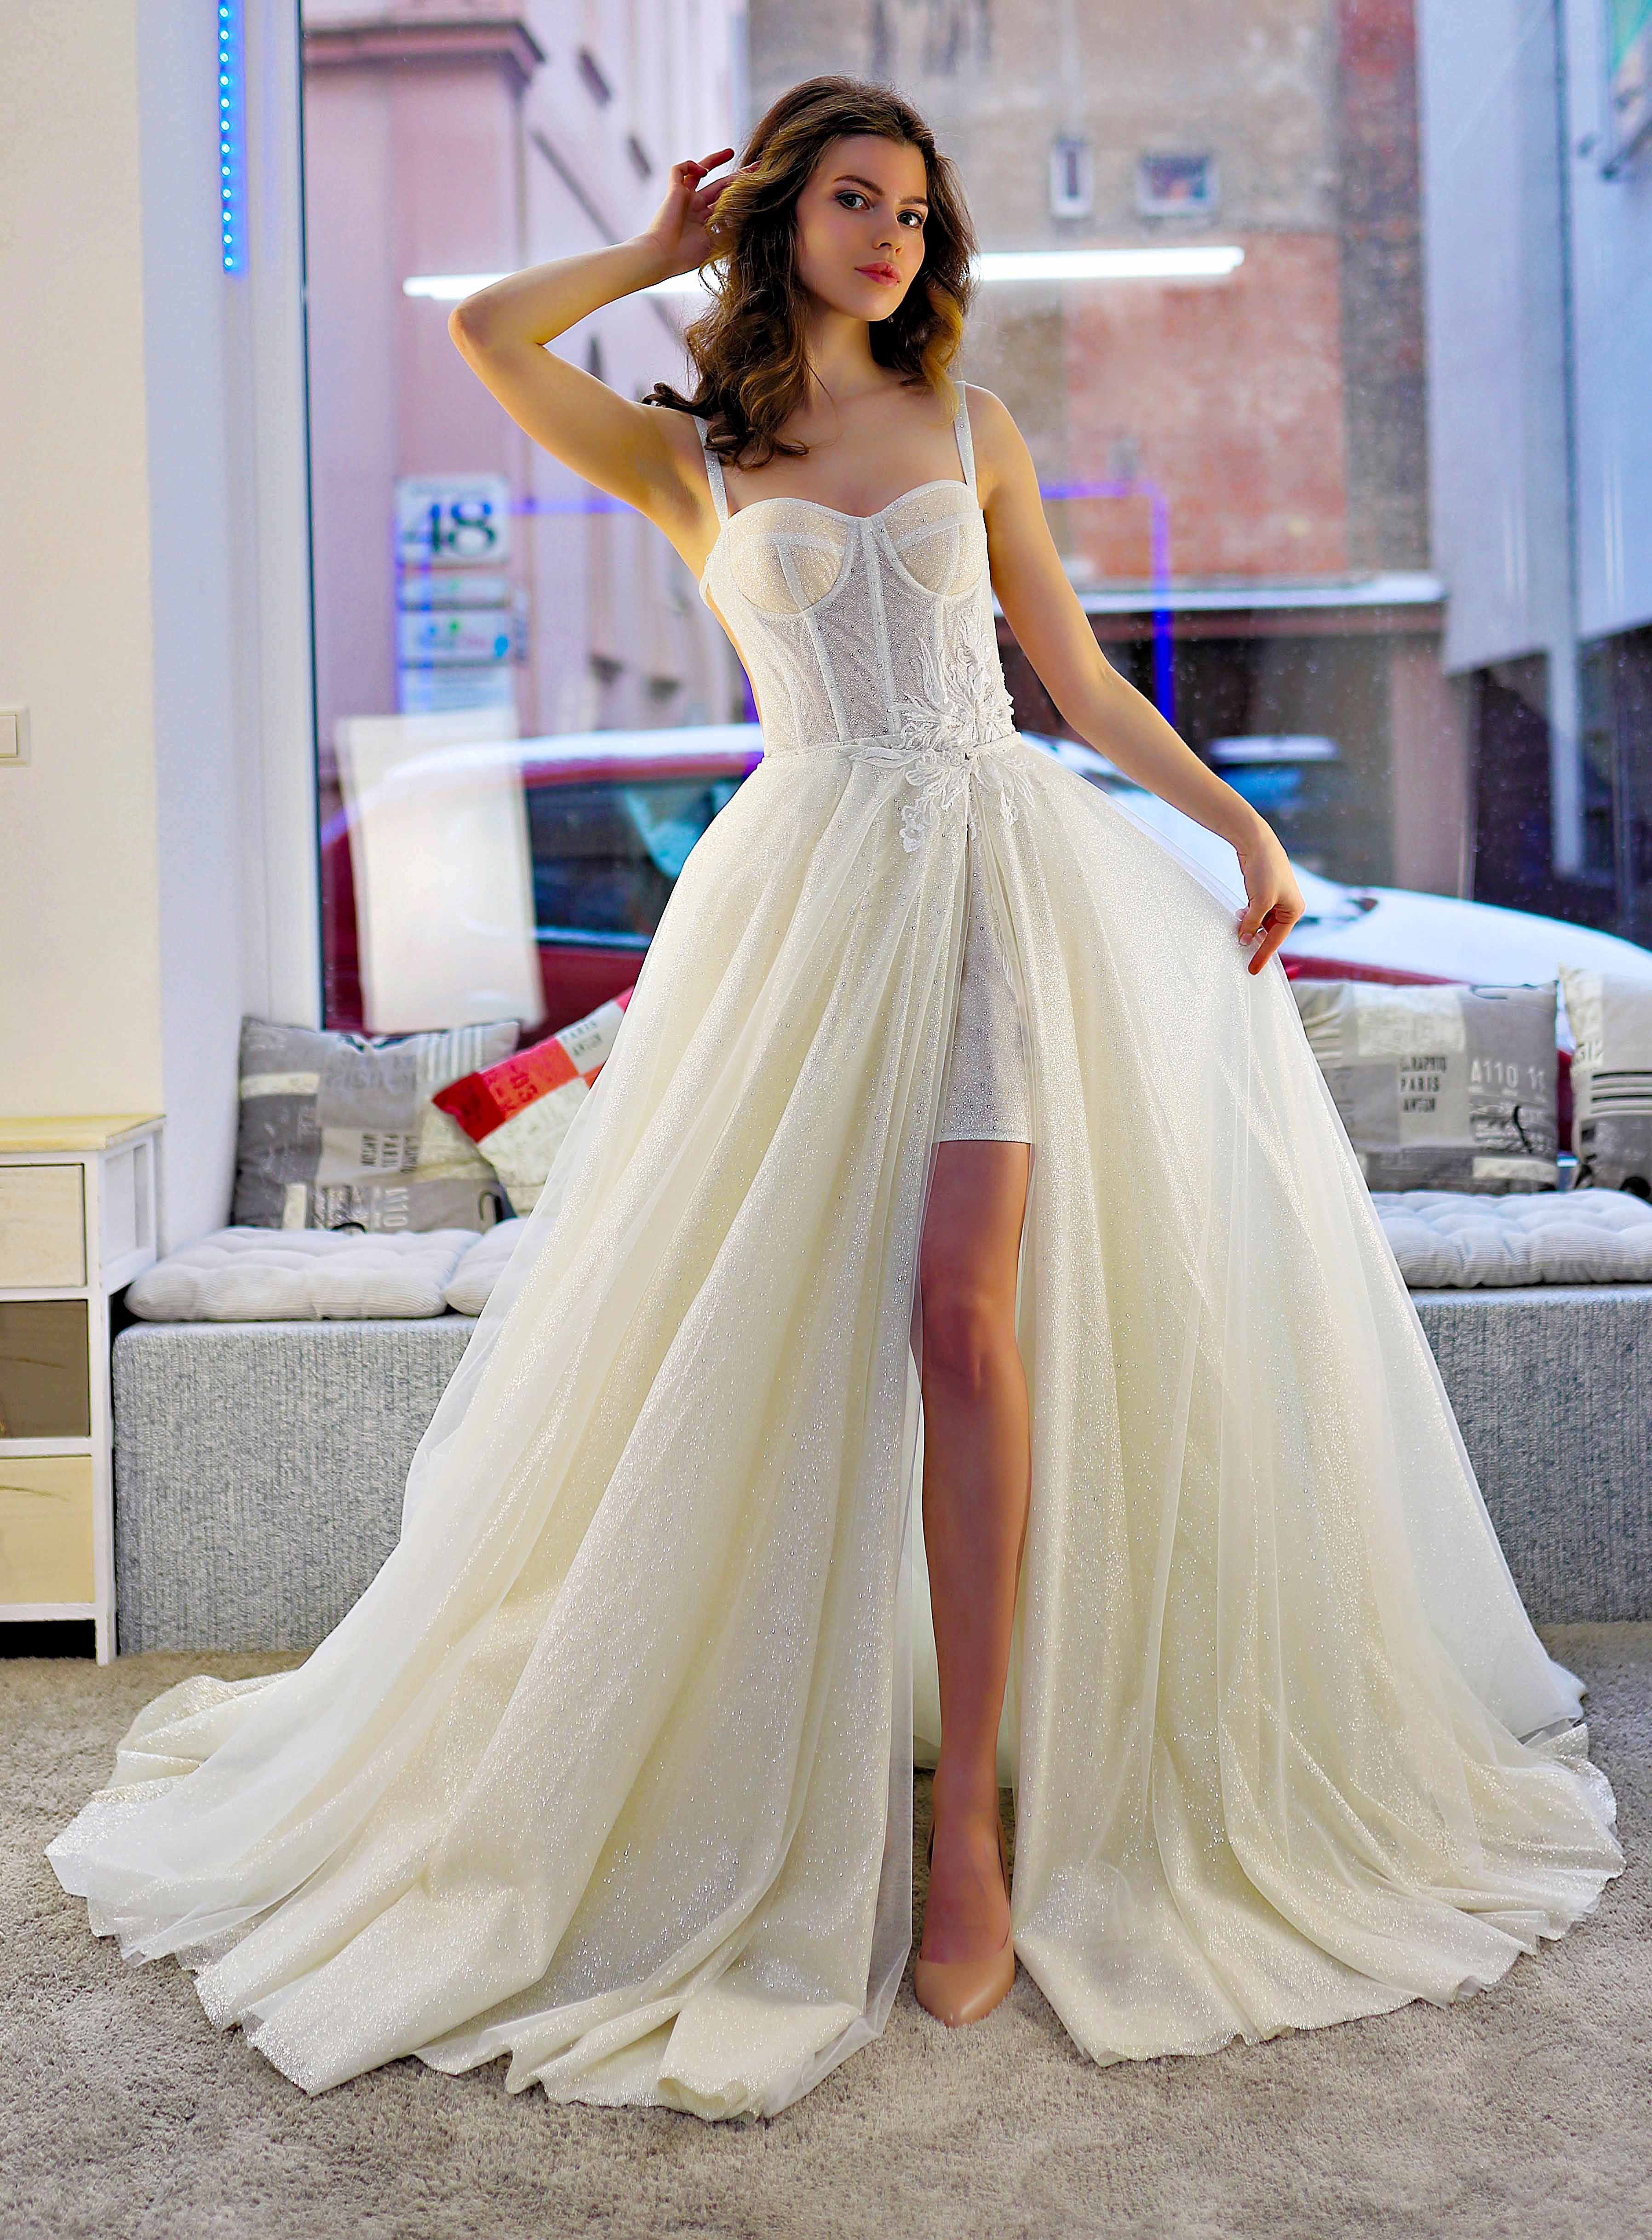 Schantal Brautkleid aus der Kollektion „Traum“, Modell 14006.